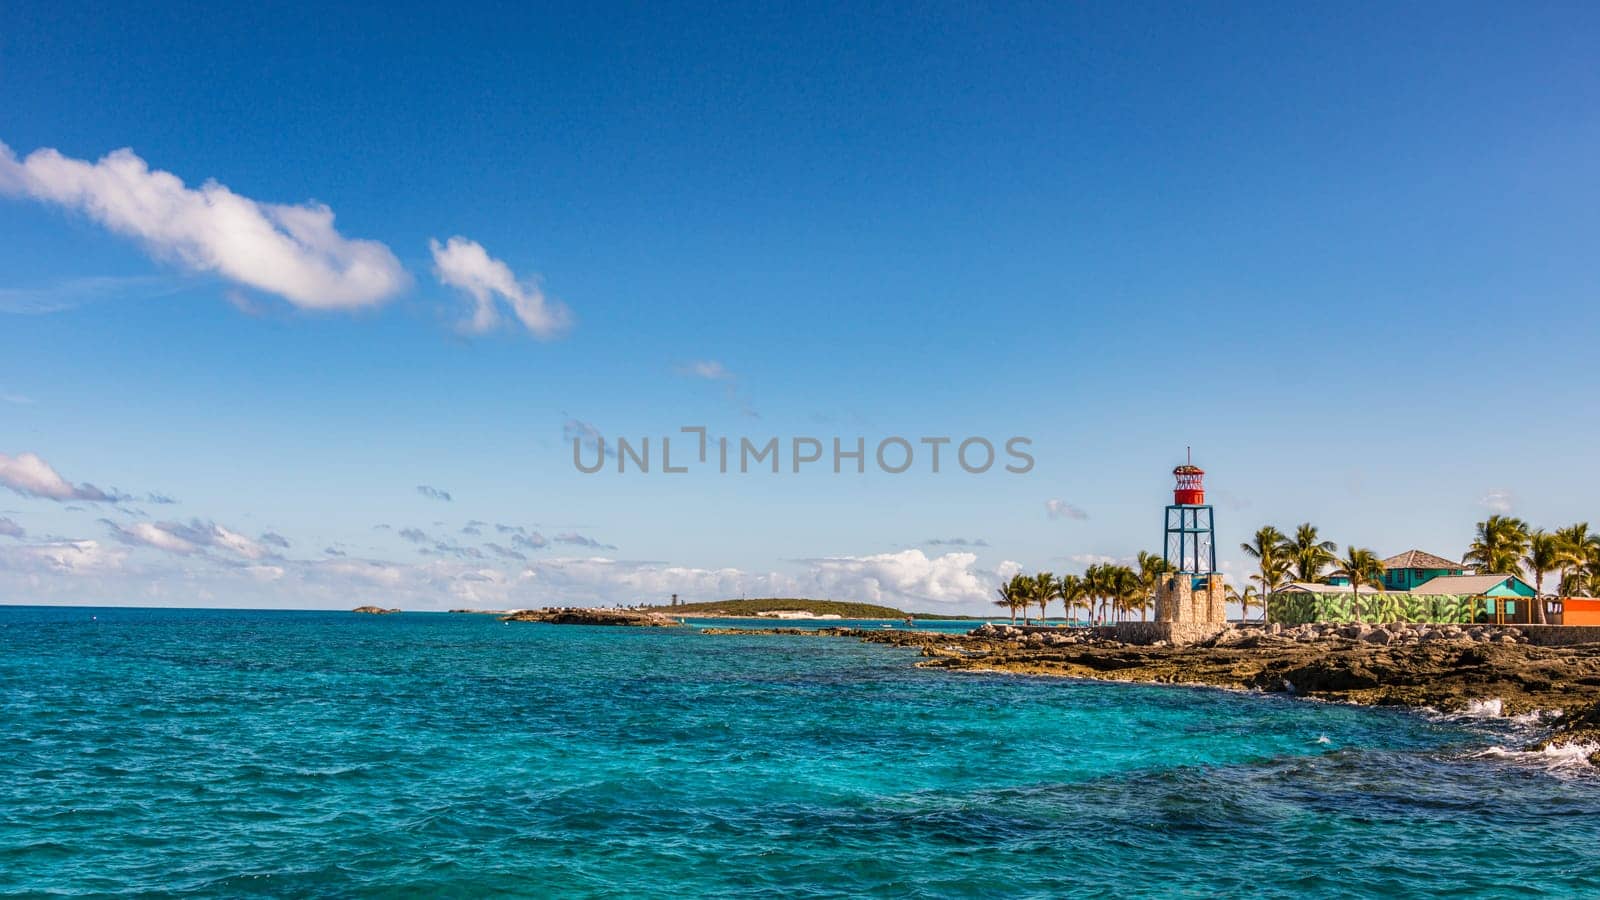 Bahamas Coco Cay Caribbean Island by vladispas